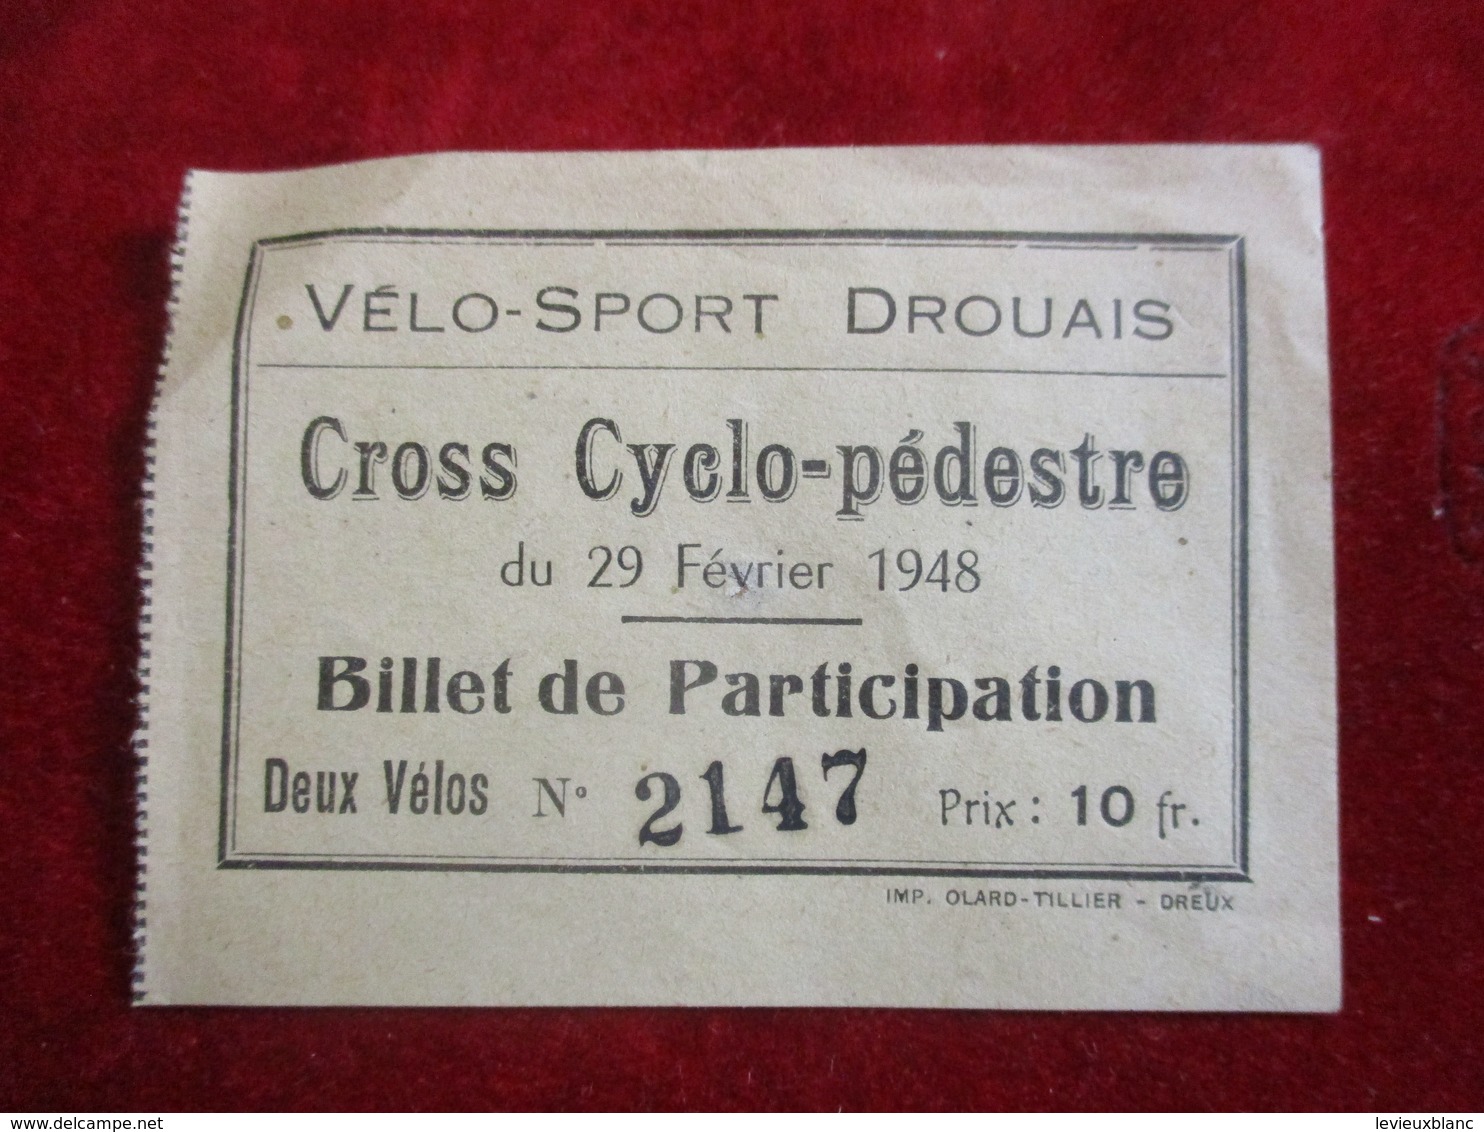 Billet De Participation/ Vélo-Sport Drouais / Cross Cyclo-pédestre/ DREUX /Ollard Tillier/ 1948   TCK168 - Cycling